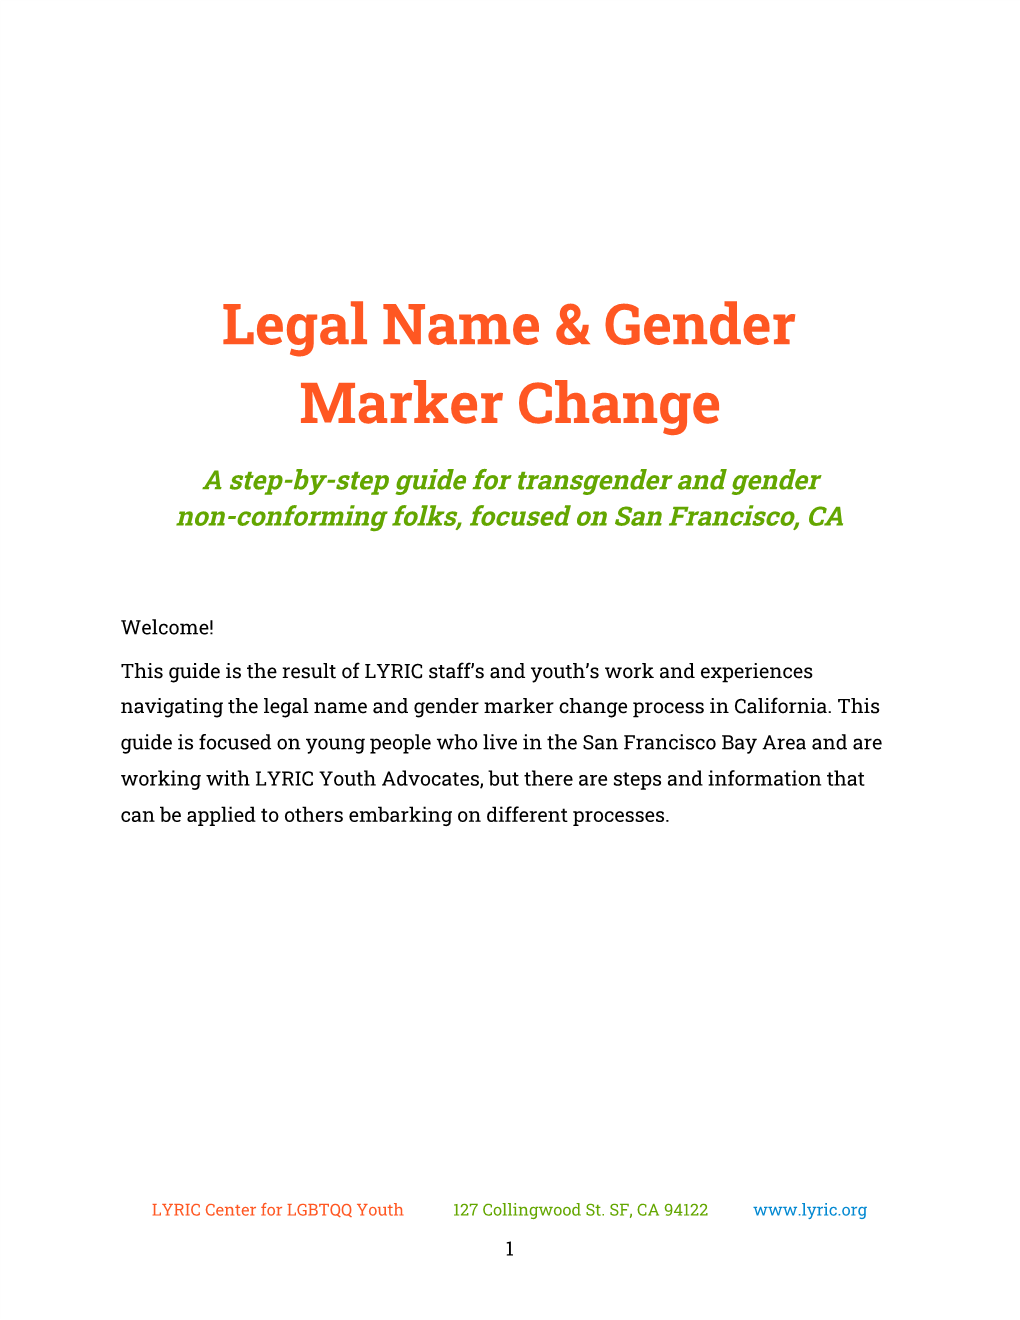 Legal Name & Gender Marker Change A